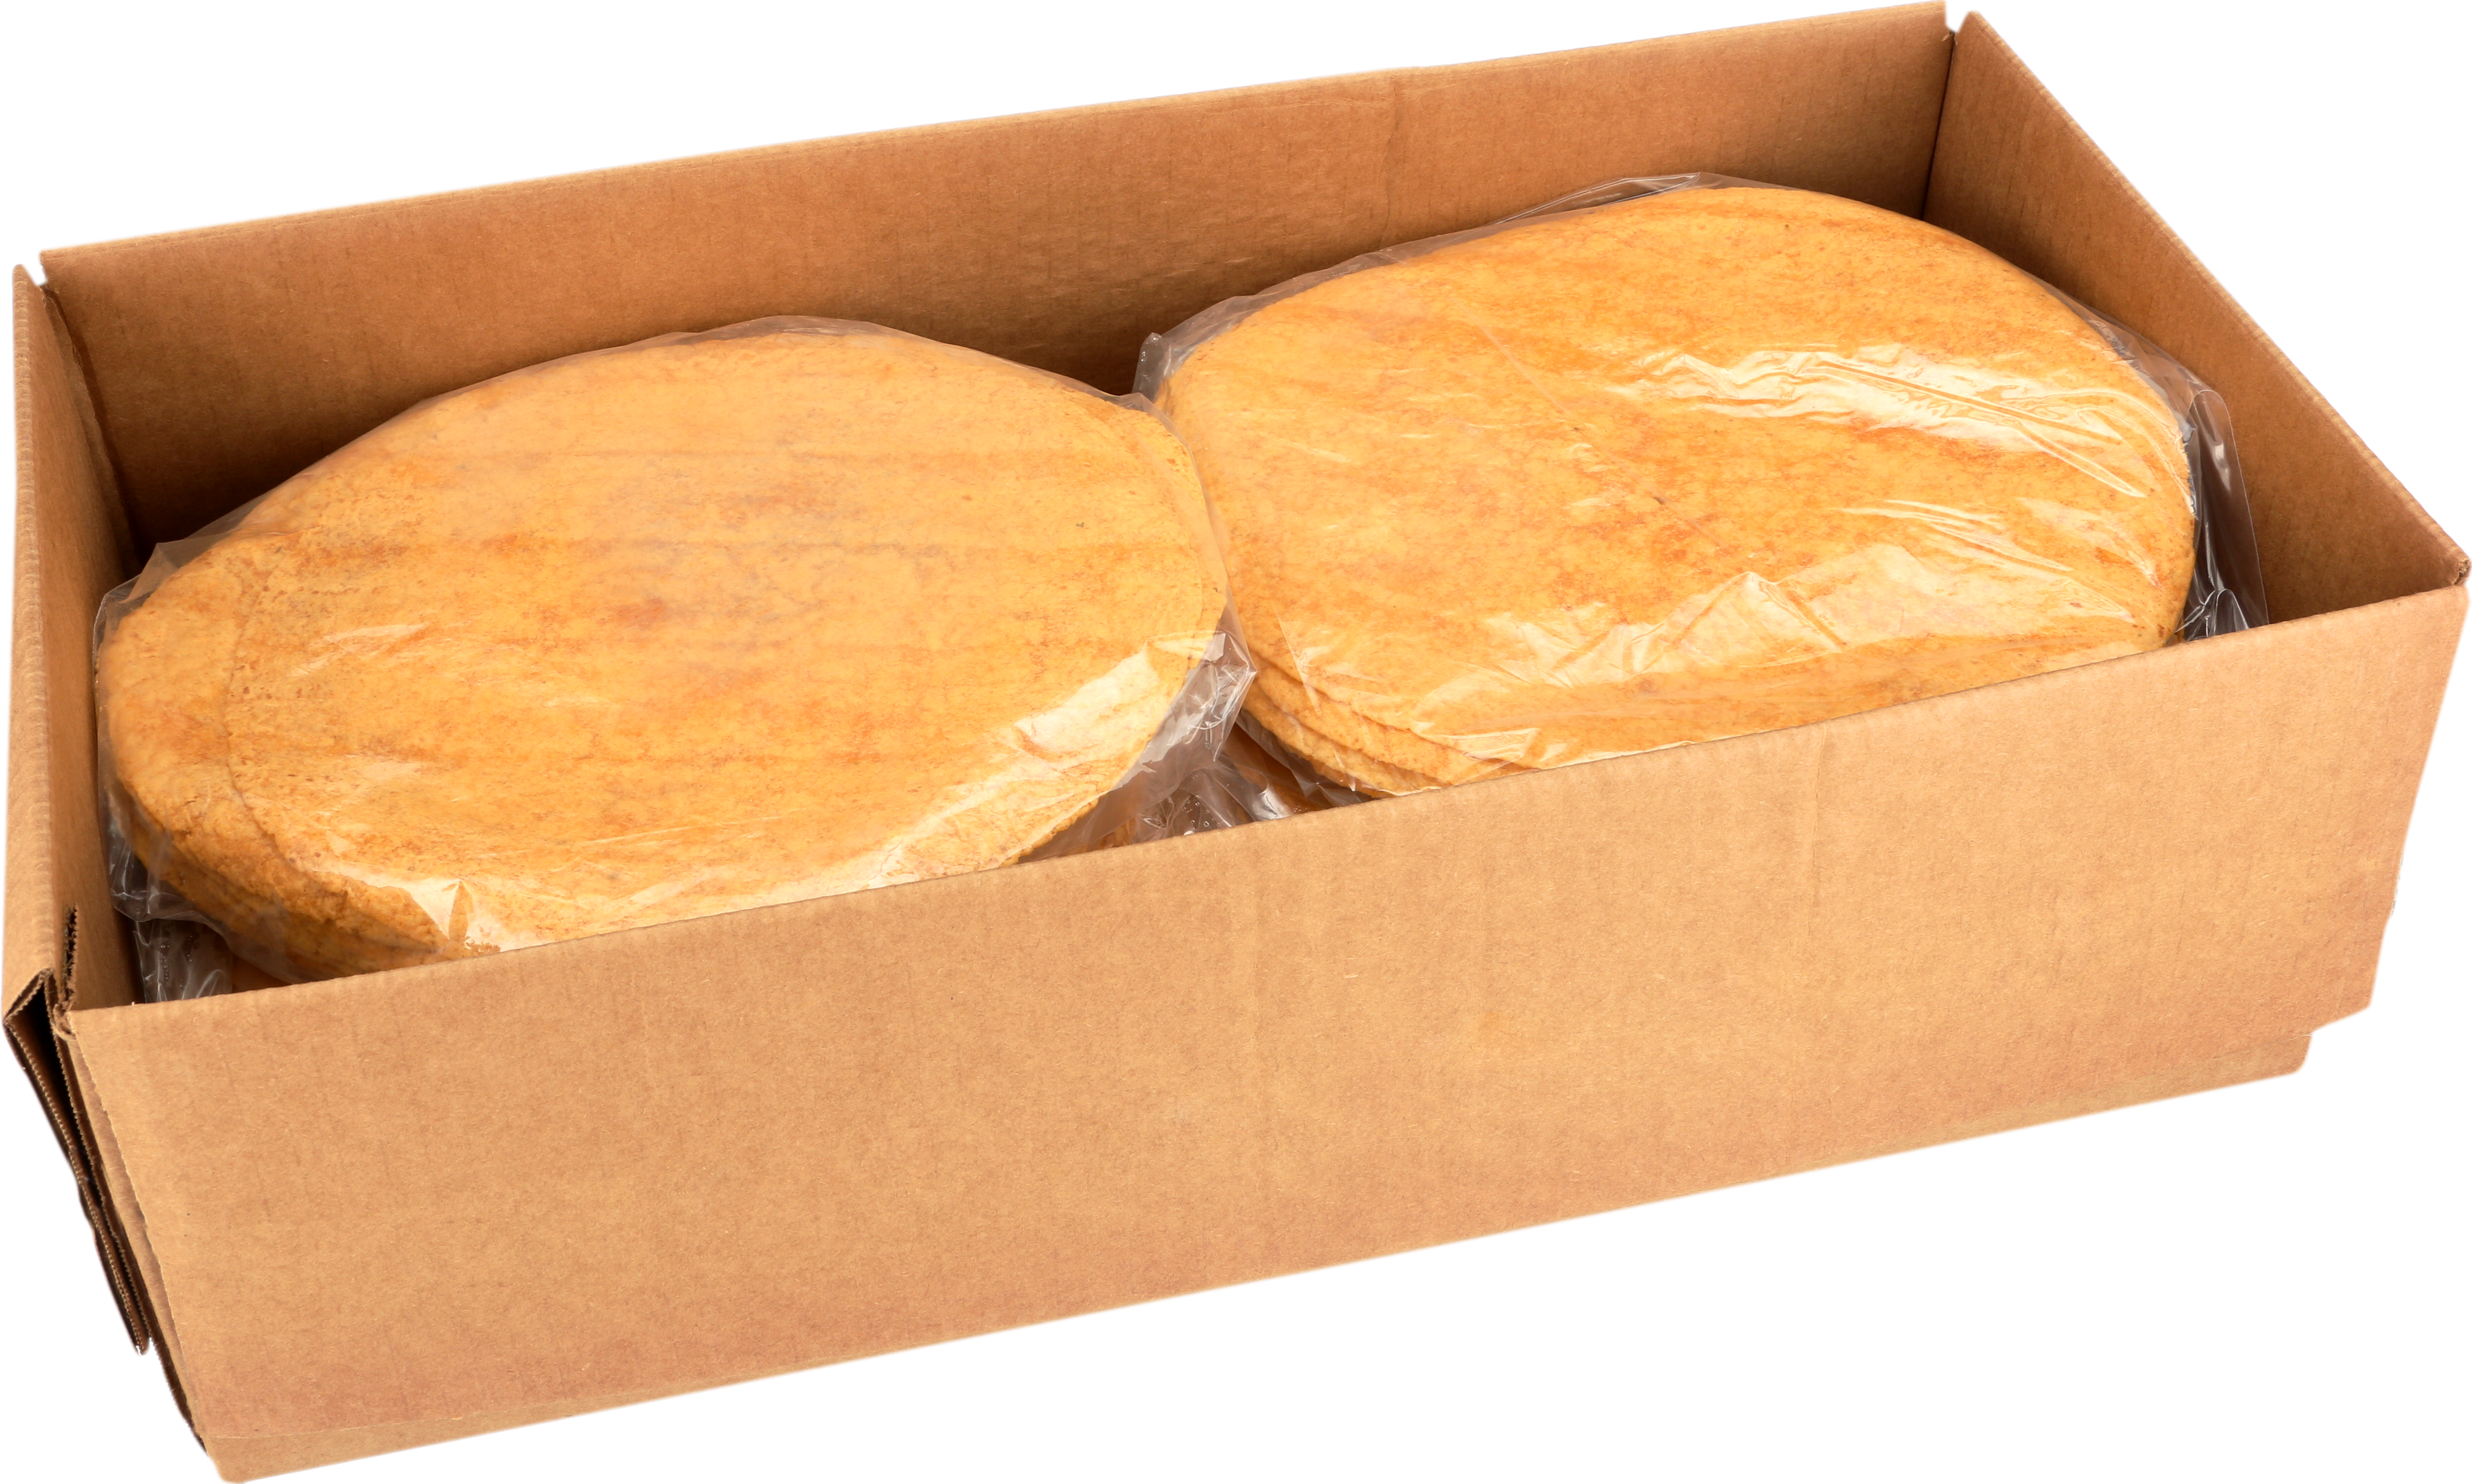 Receta De Oro® 9" Shelf Stable Whole Grain Reduced Sodium Cheese Jalapeno Flour Tortillas_image_21